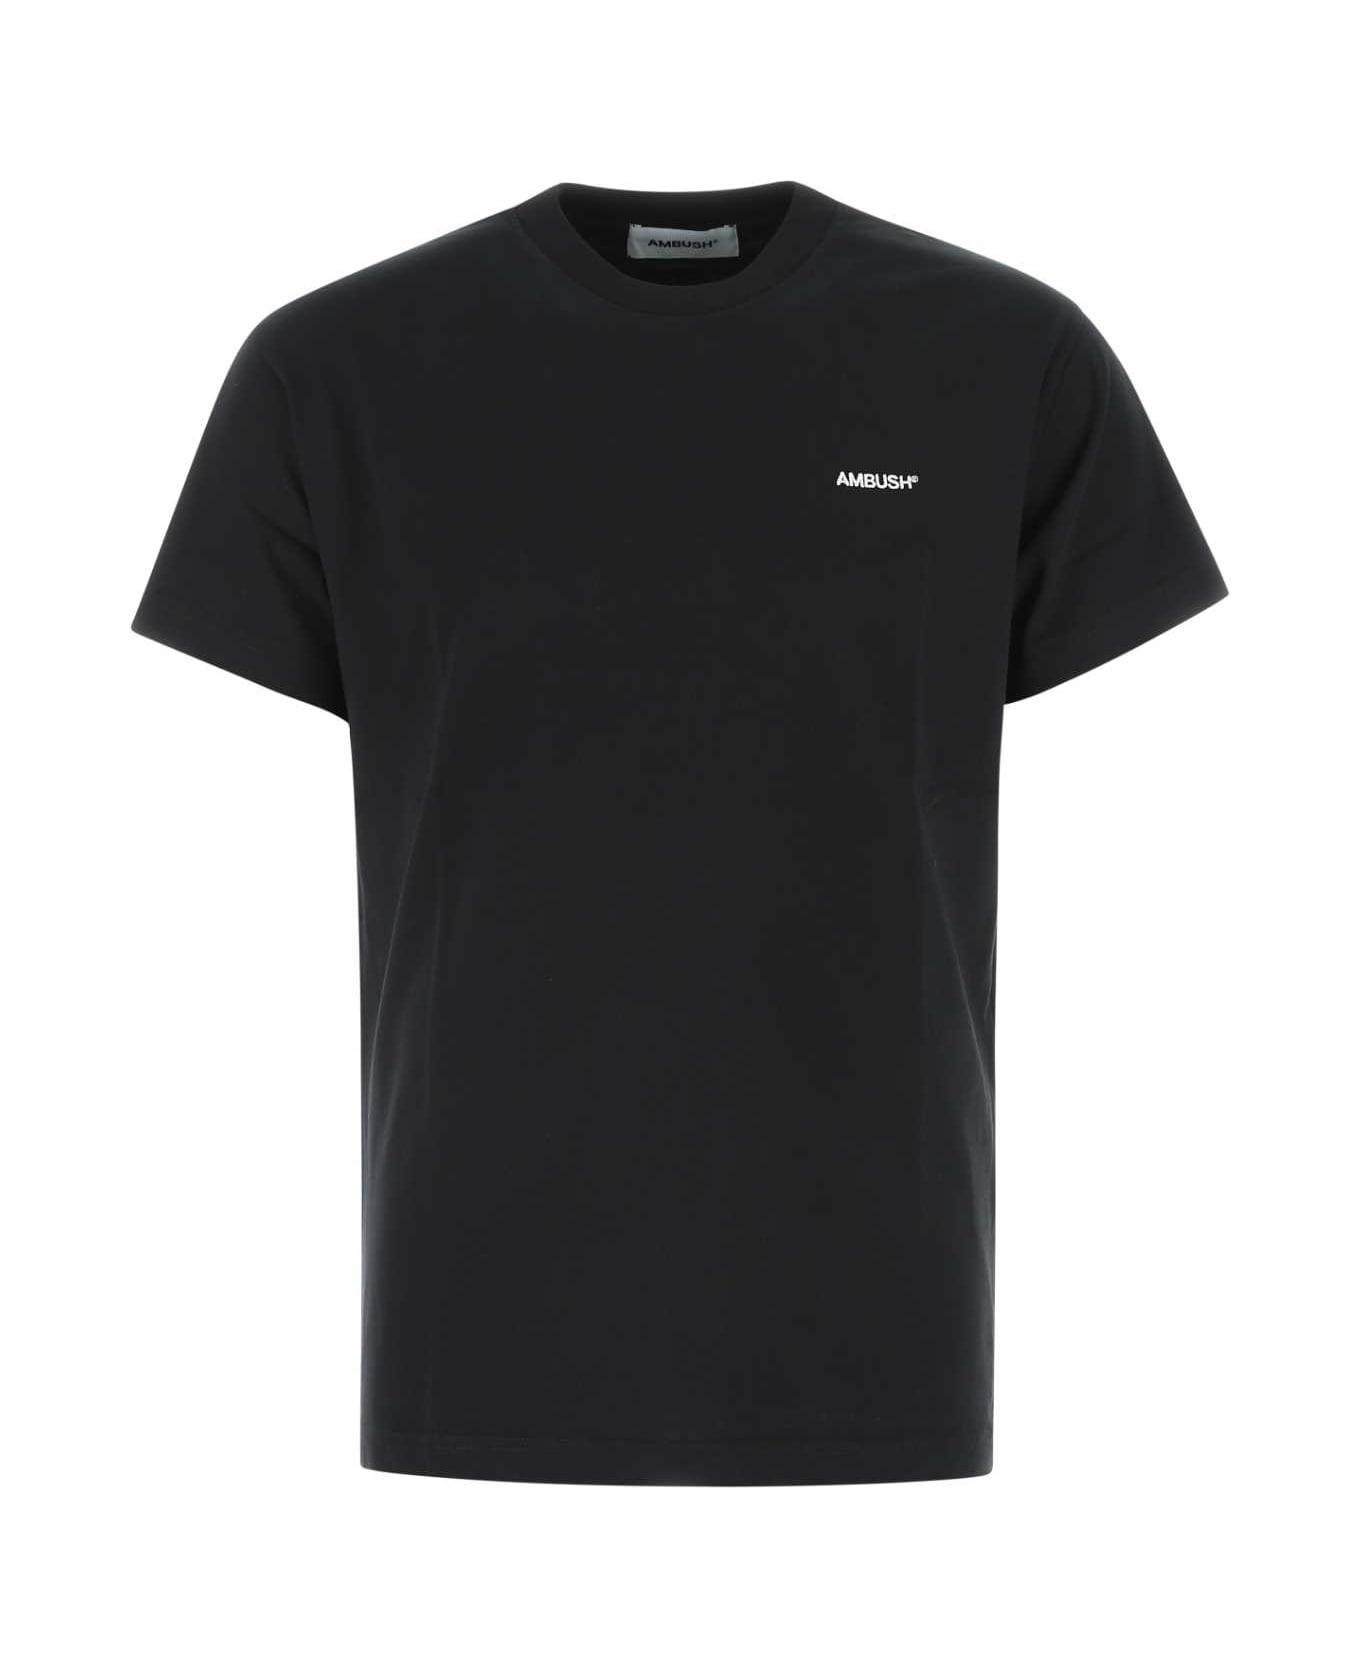 AMBUSH Black Cotton T-shirt Set - 1002